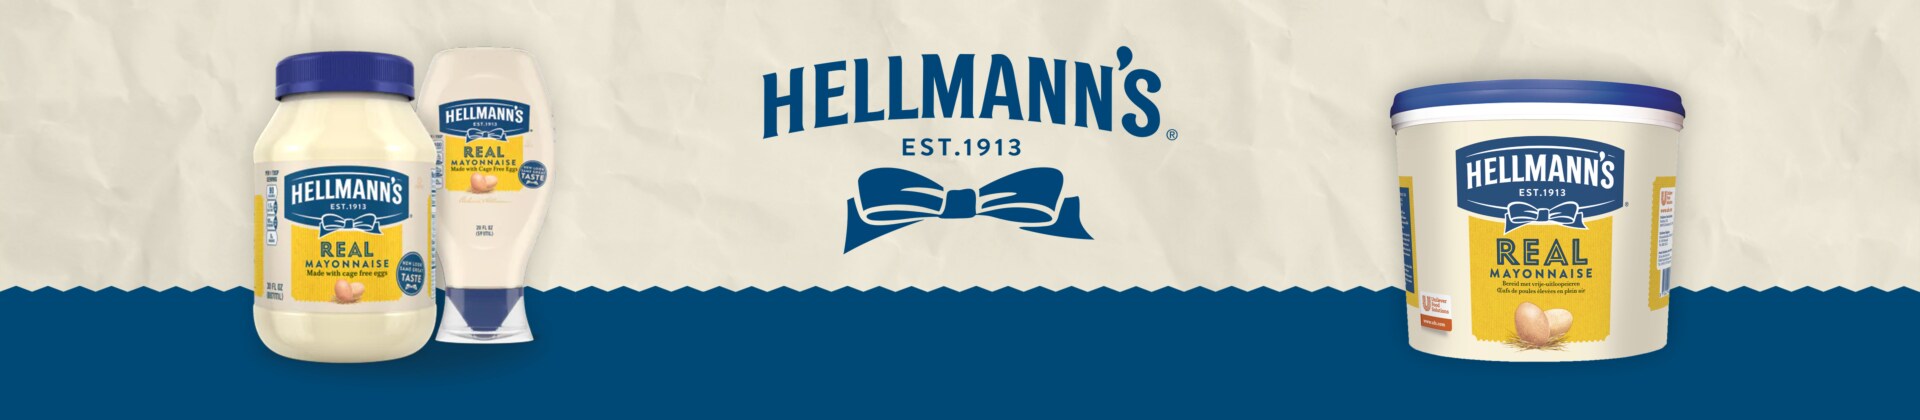 Hellmann's merkenpagina